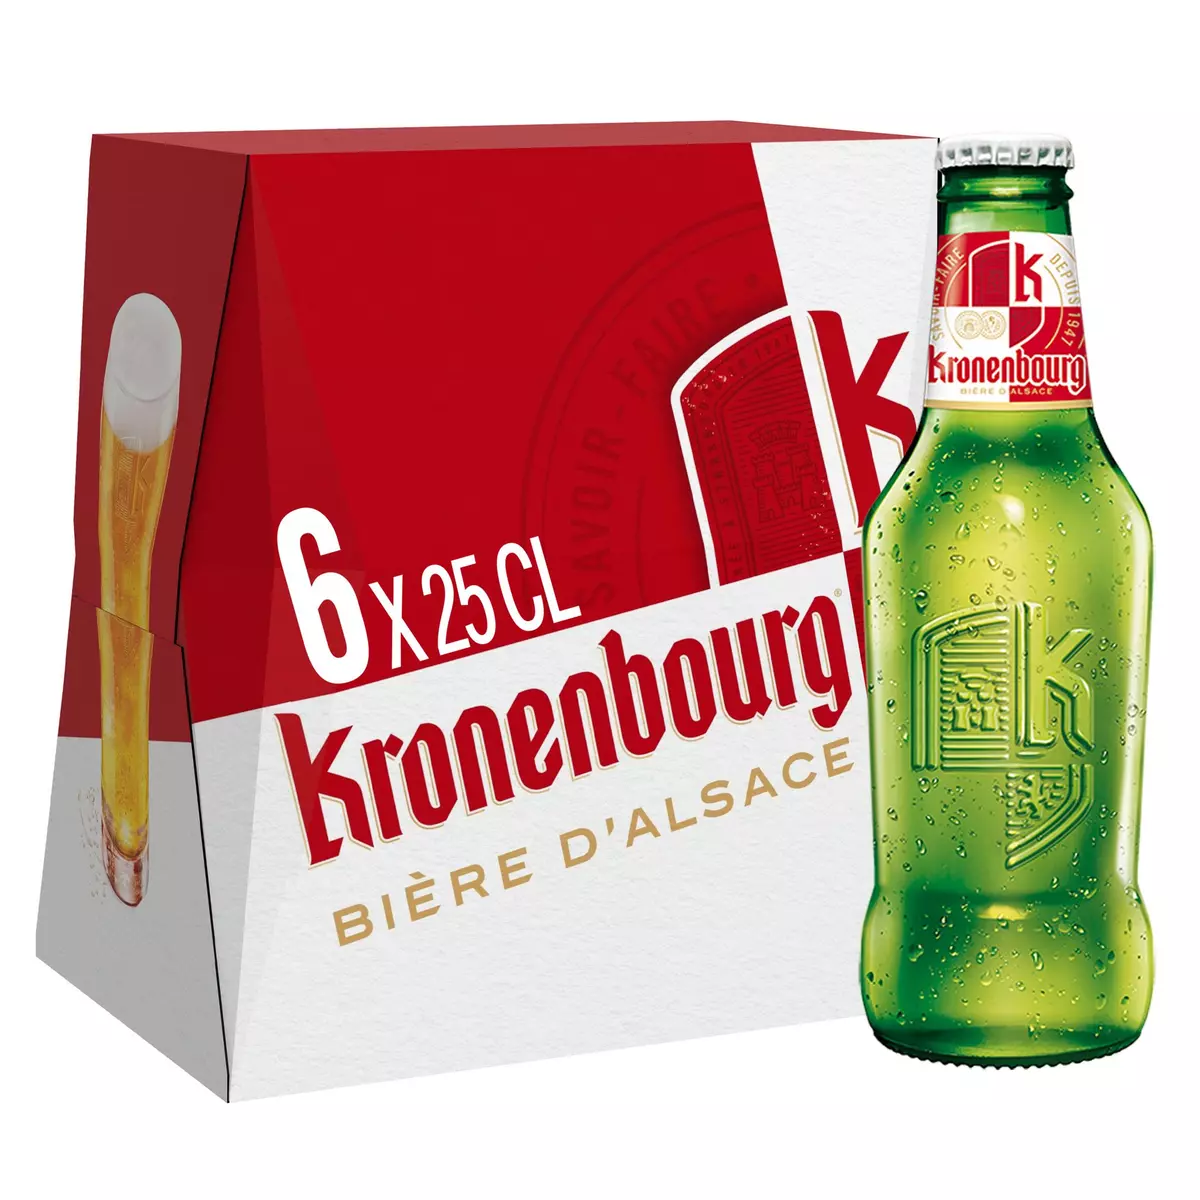 KRONENBOURG Bière blonde 4,2% bouteilles 6x25cl